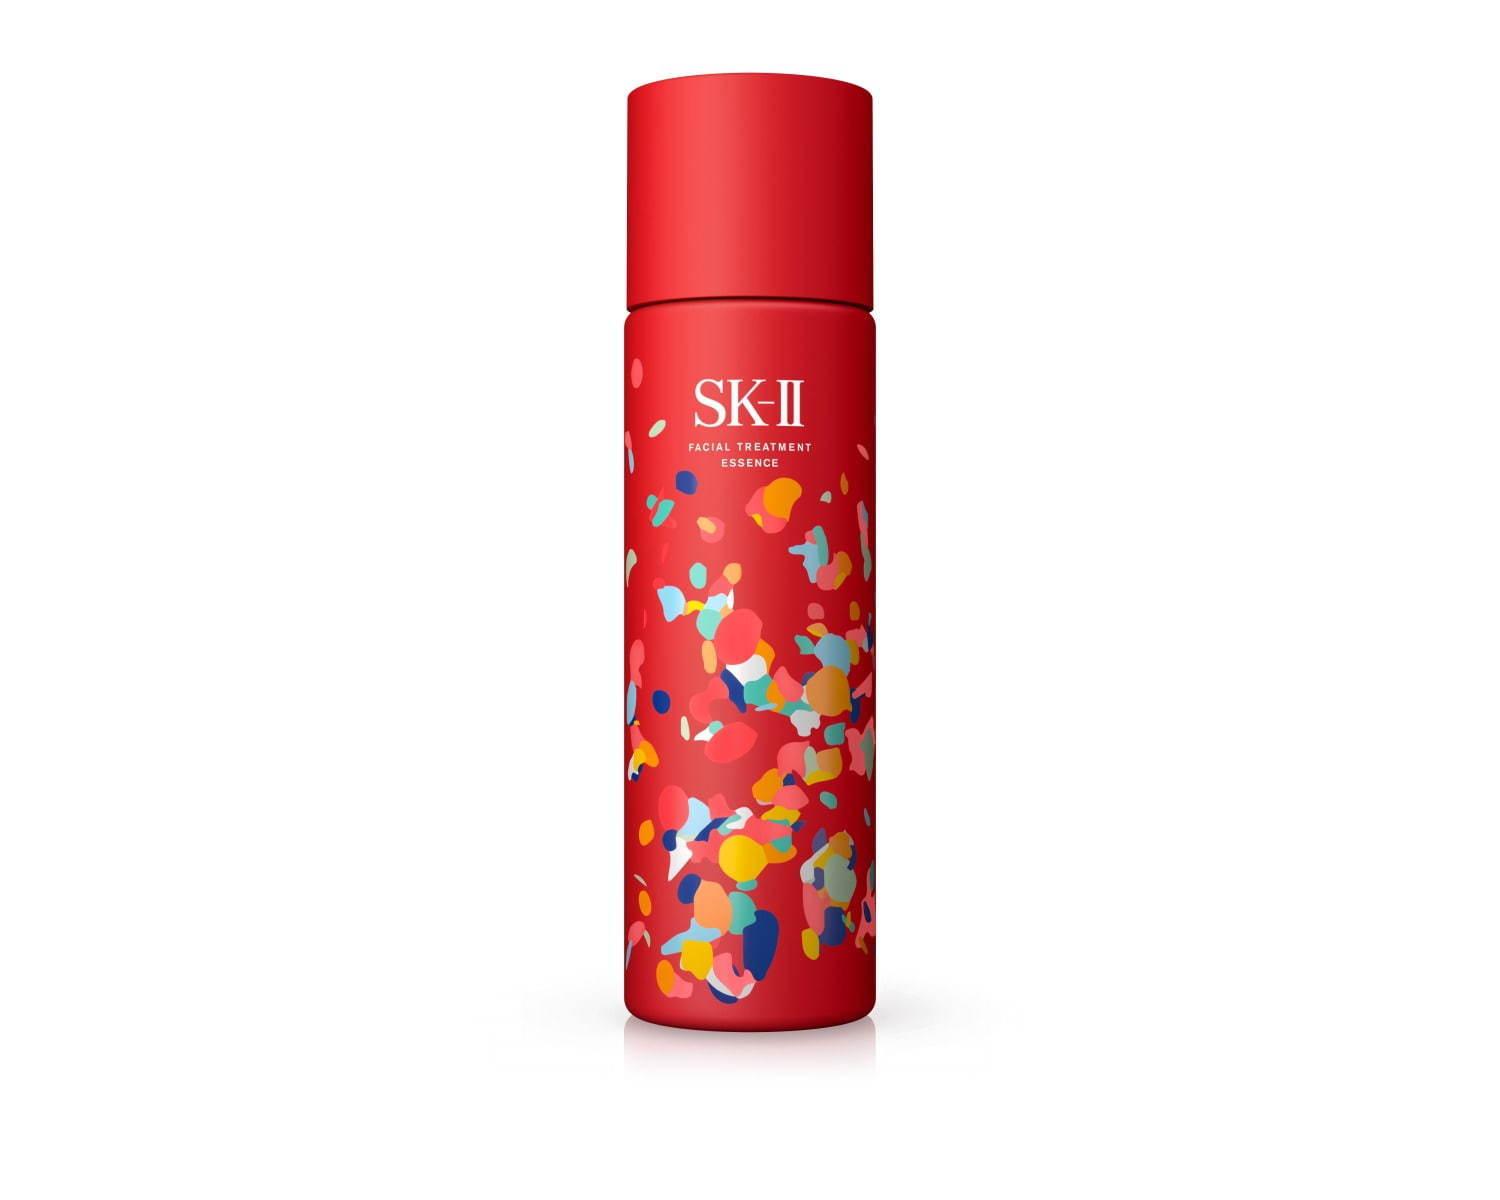 SK-II売上No.1 の化粧水「フェイシャル トリートメント エッセンス」の限定デザインボトル コピー